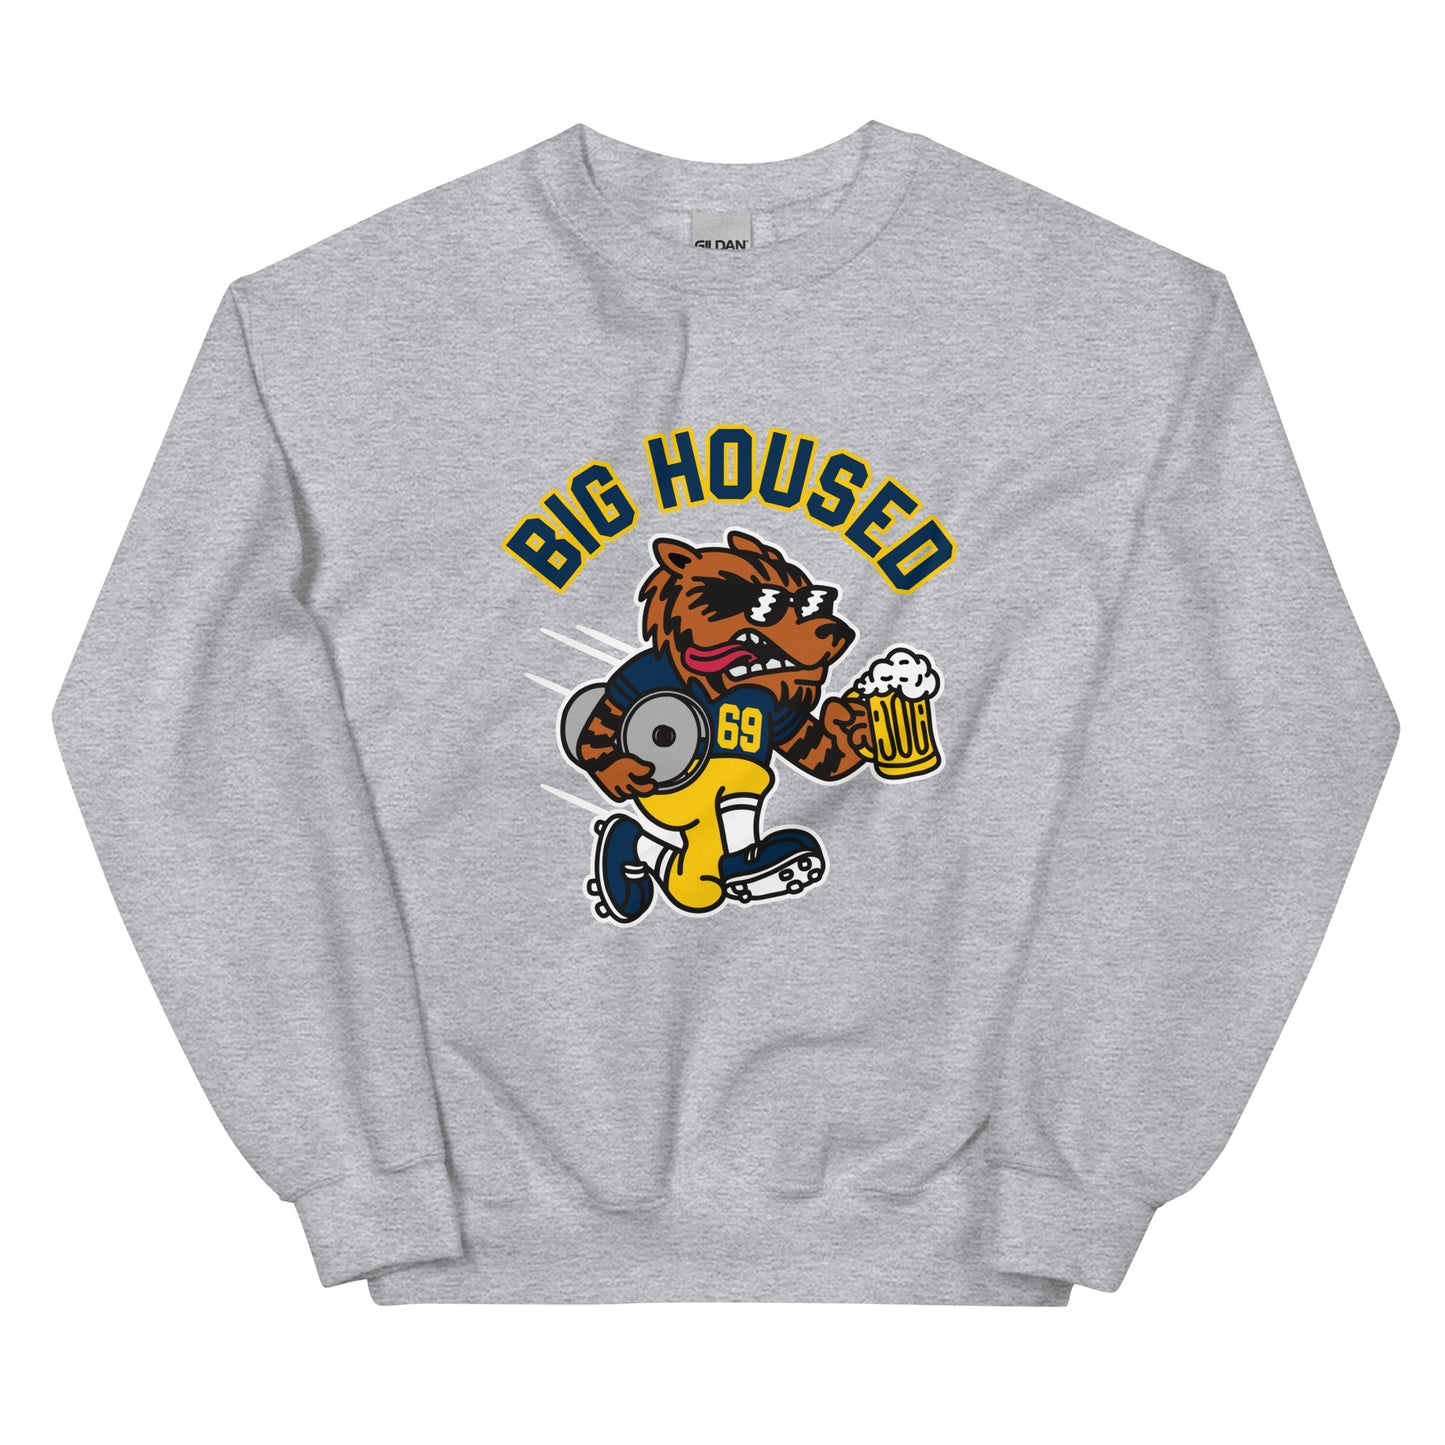 Big Housed Sweatshirt